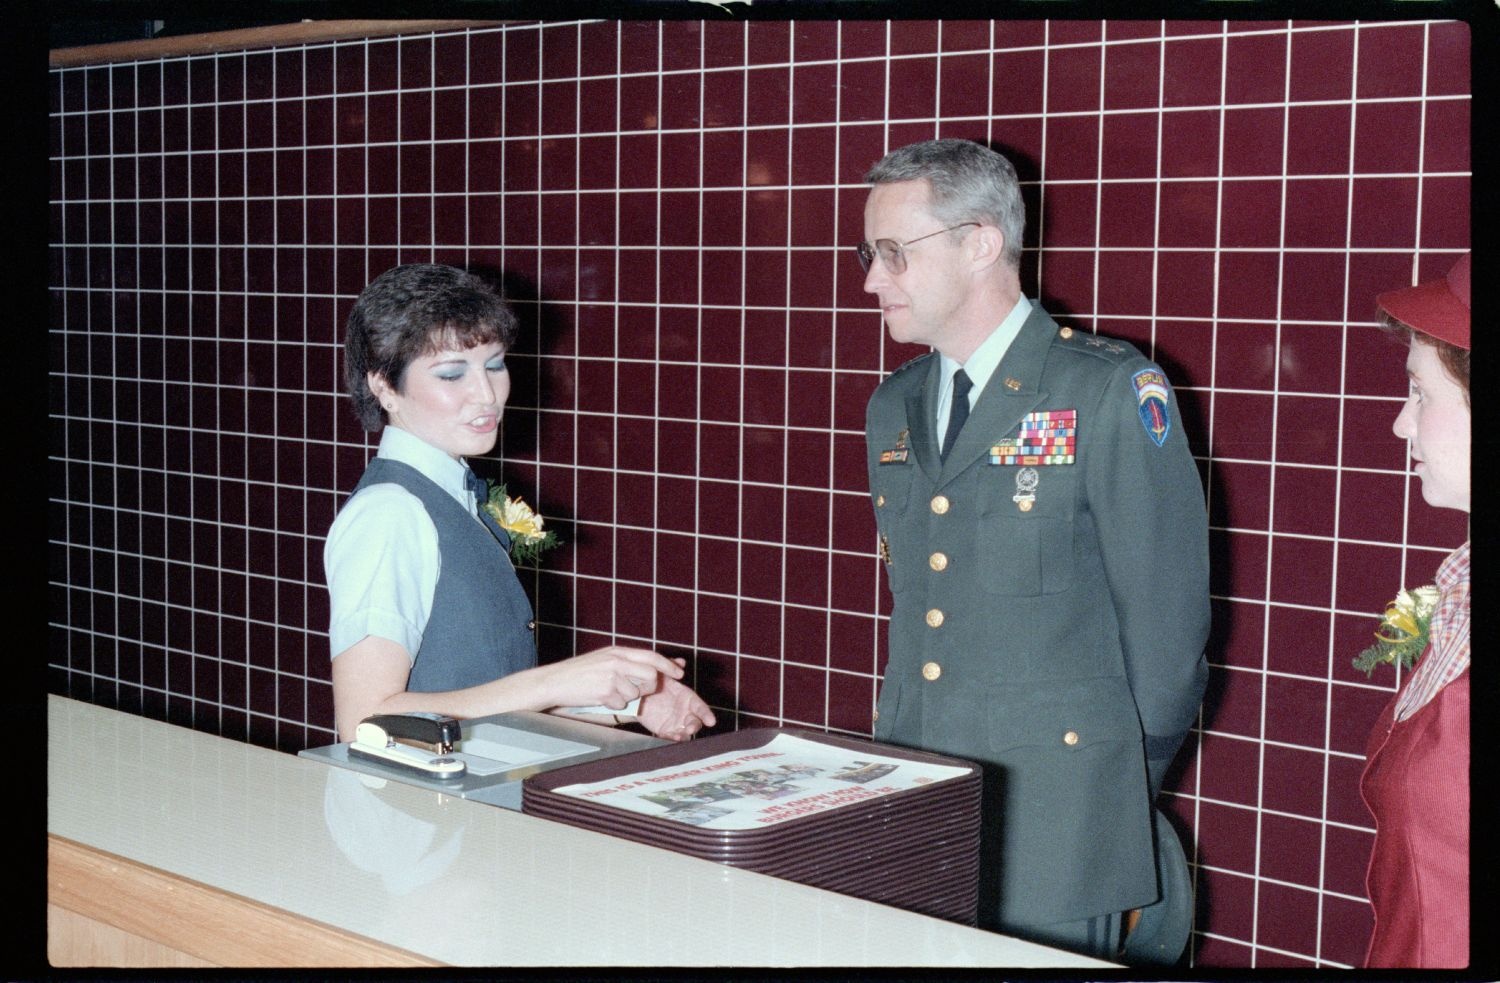 Fotografie: Eröffnung einer Burger King Filiale an der Truman Plaza in Berlin-Dahlem (AlliiertenMuseum/U.S. Army Photograph Public Domain Mark)